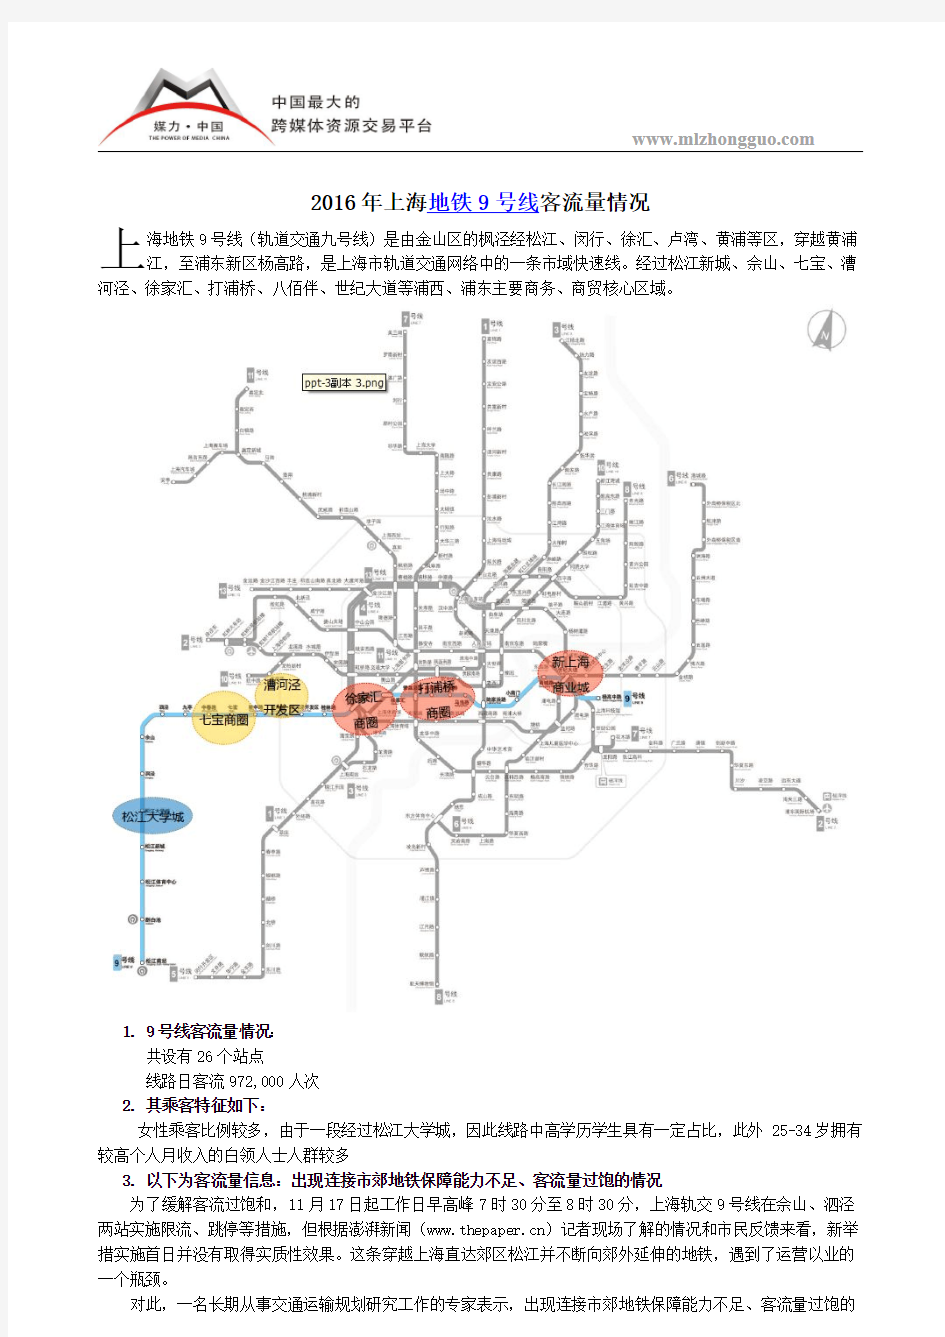 2016年上海地铁9号线客流量情况